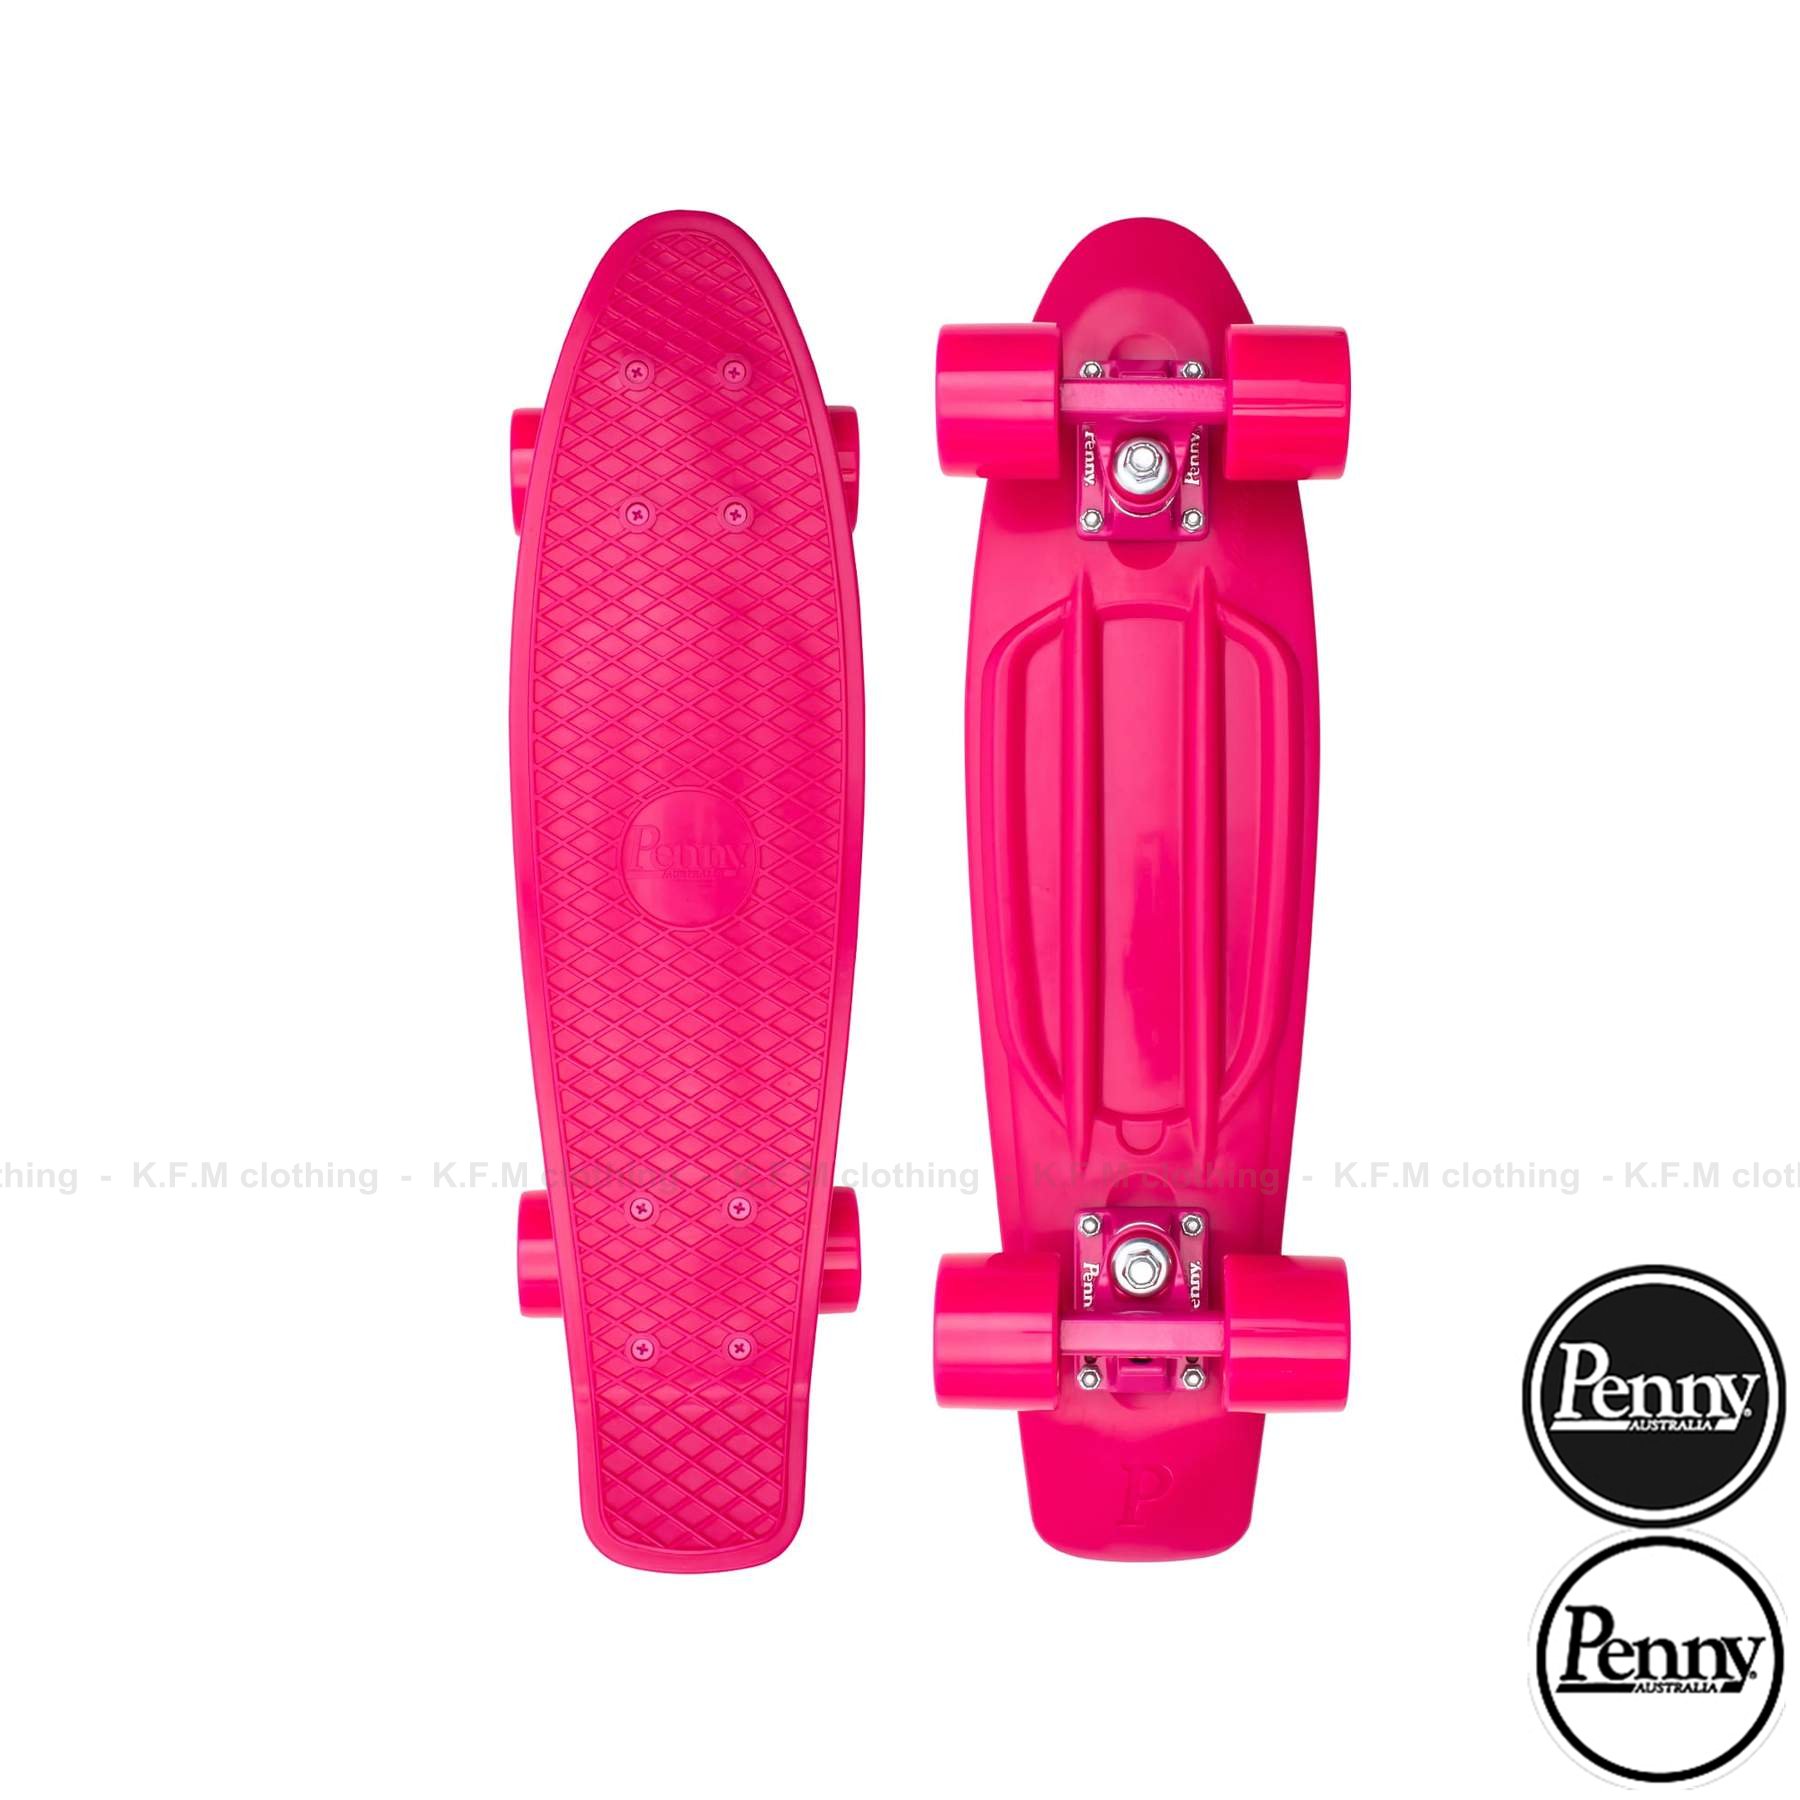 【 K.F.M 】Penny Skateboards 2021 PINK 膠板 交通板 滑板 22吋 桃紅色